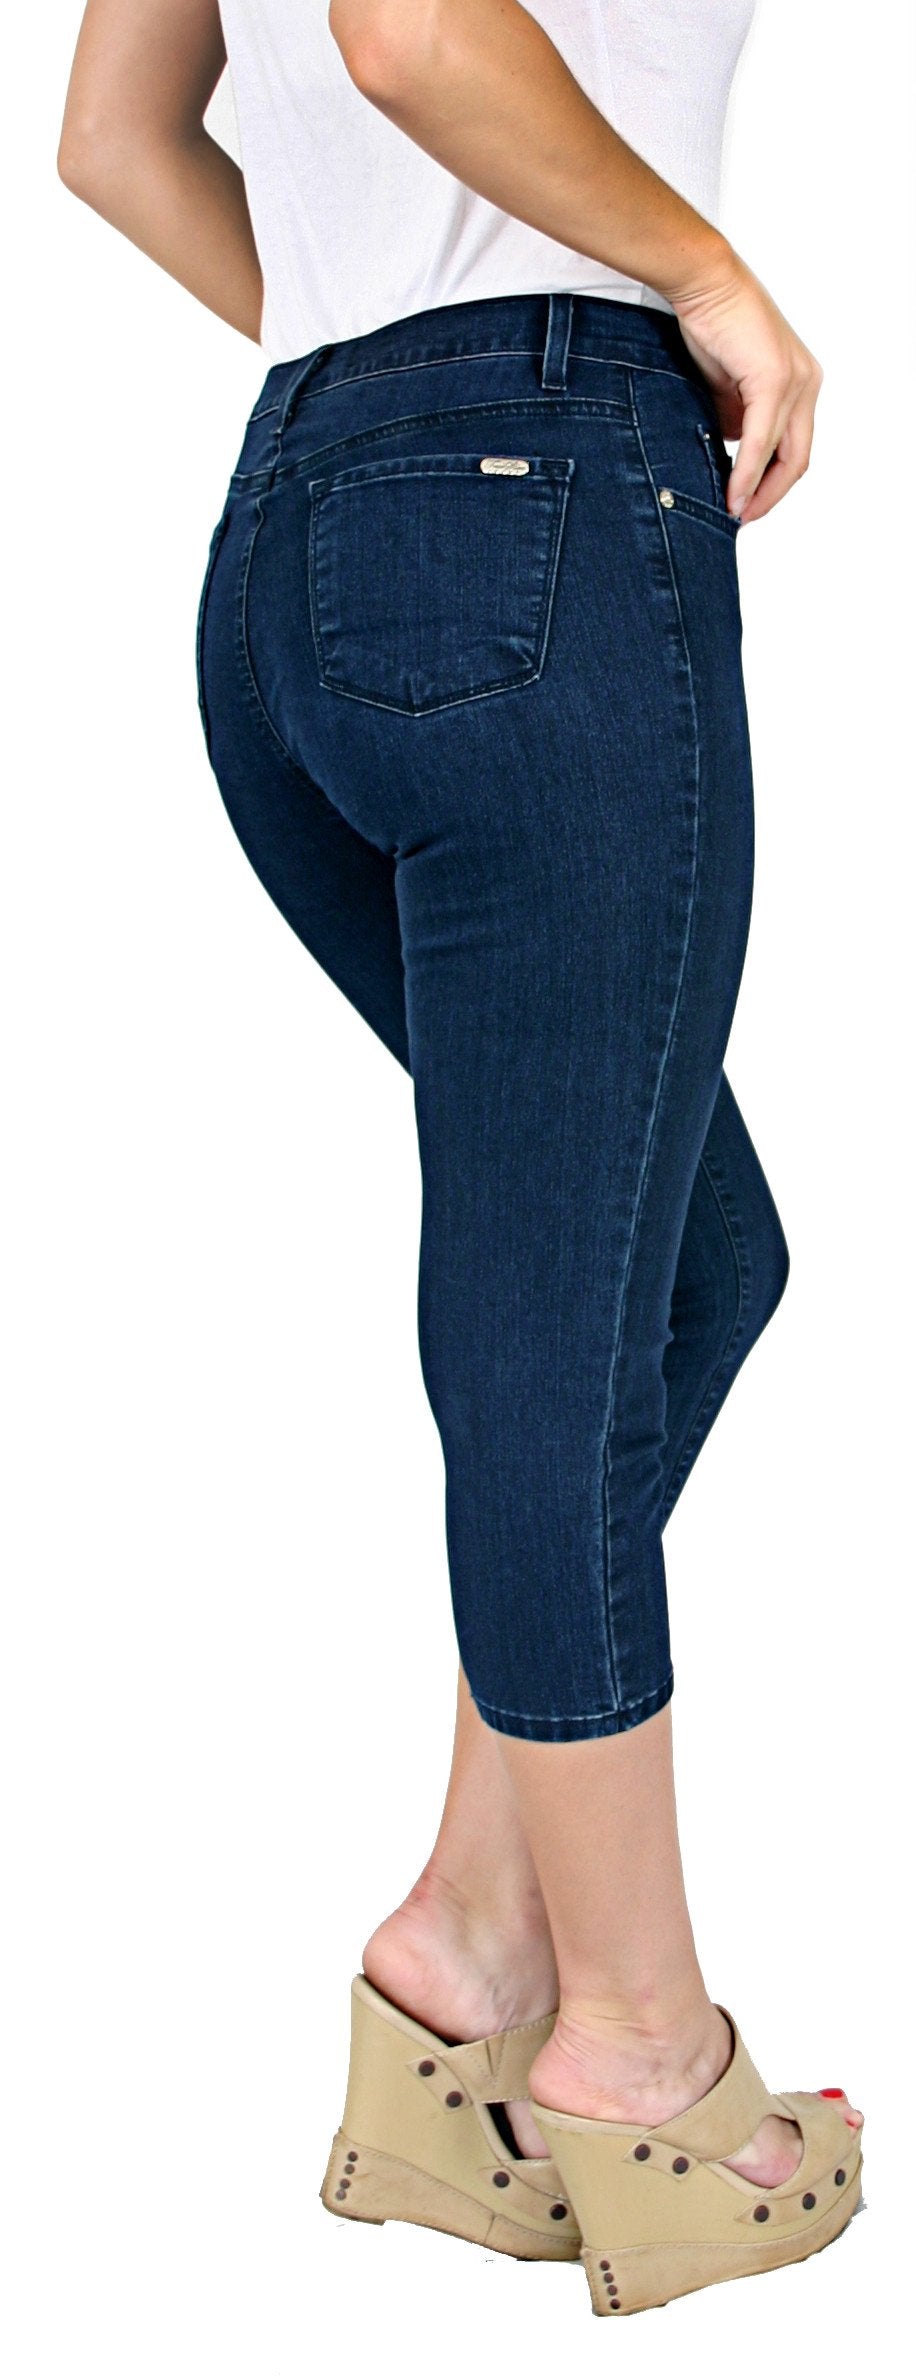 DGHM-JLMY Women's Slim Fit Denim Capri Pants Casual Skinny Slim